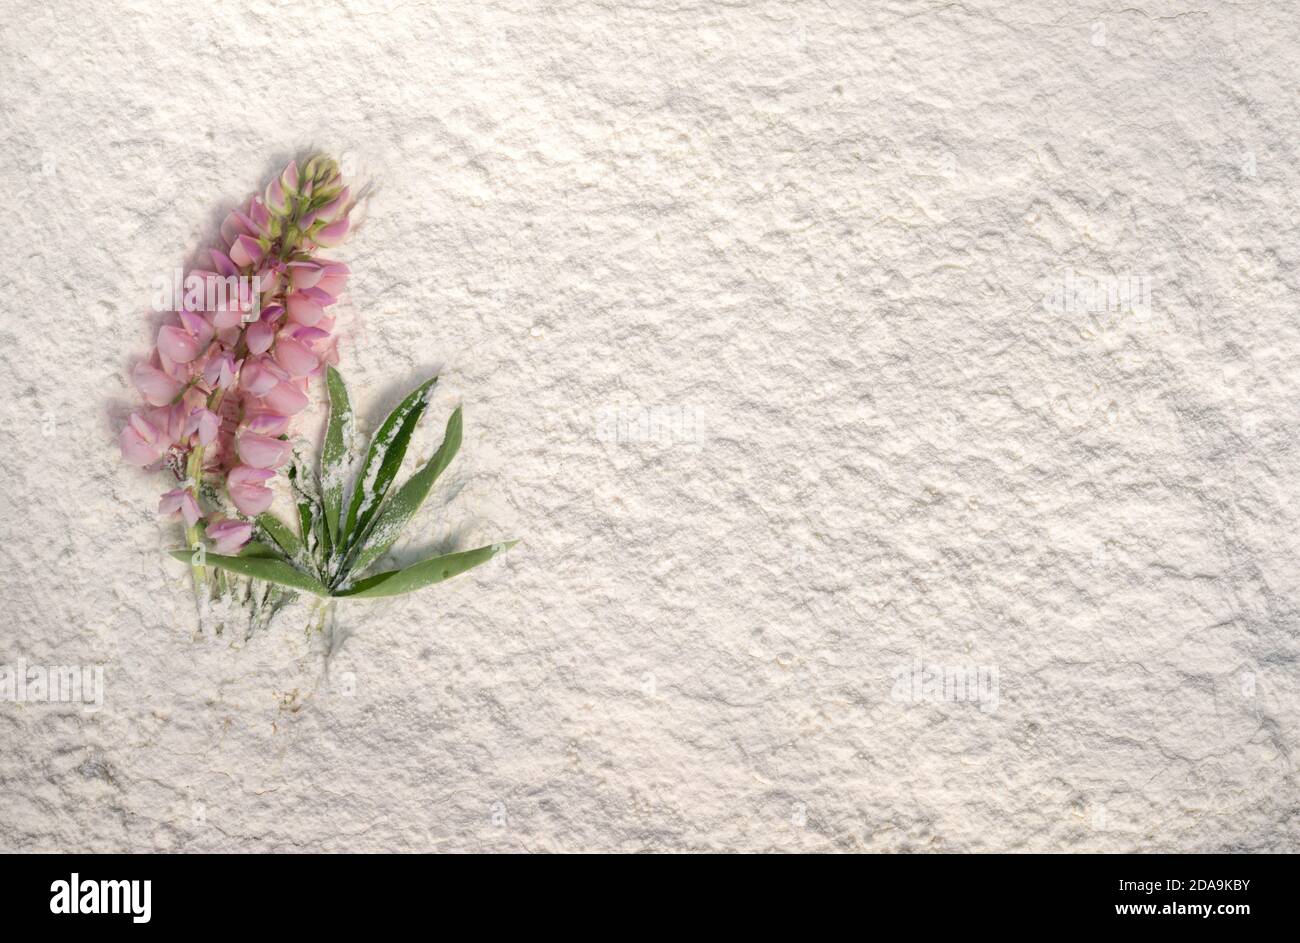 Belle lupin rose couché sur une poudre blanche. Banque D'Images